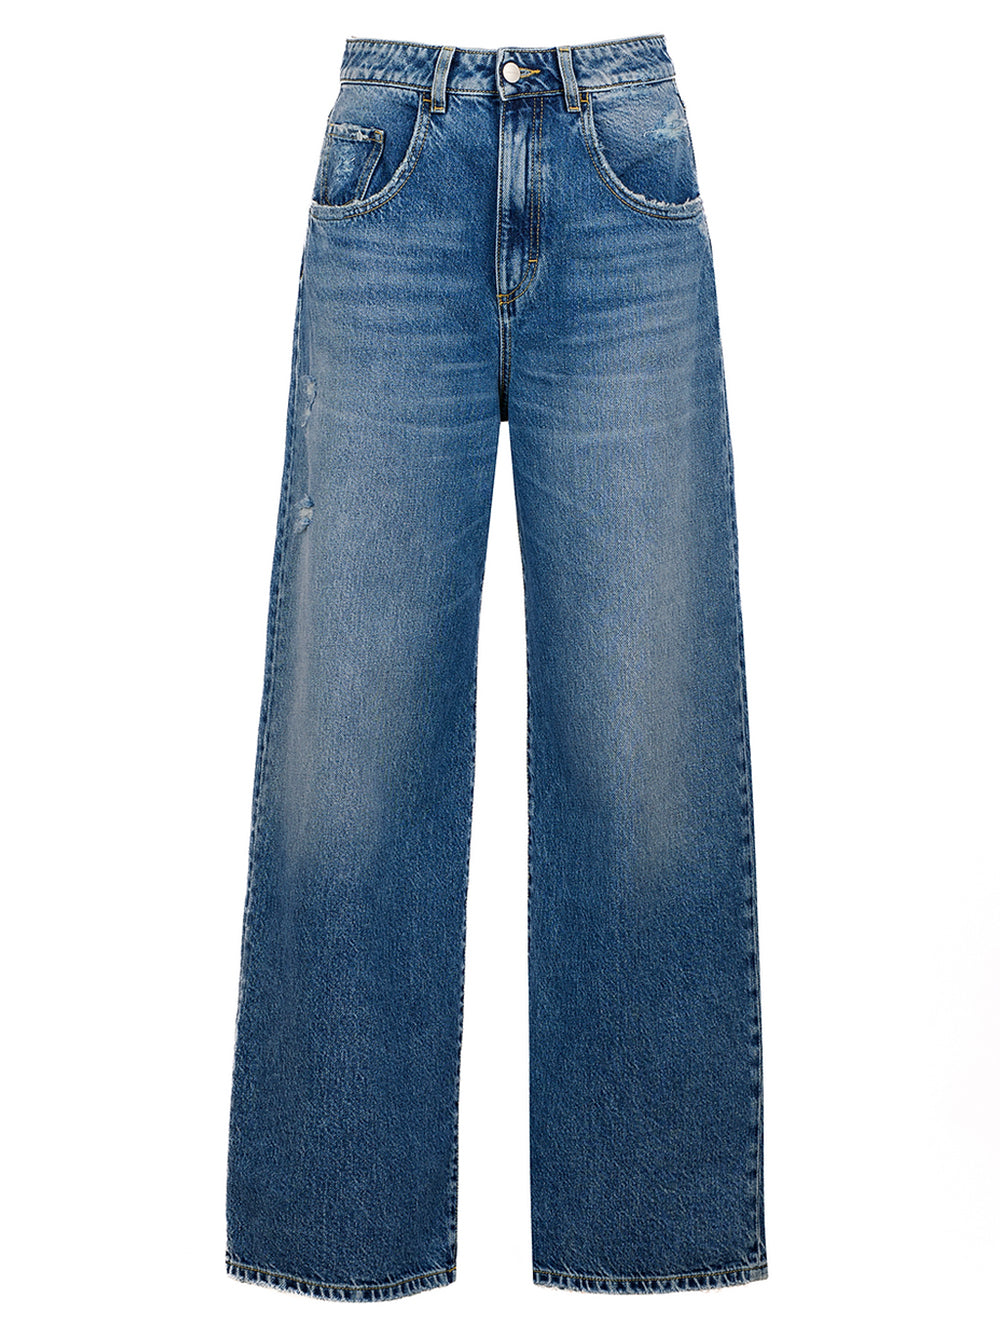 Poppy women's jeans with wide leg